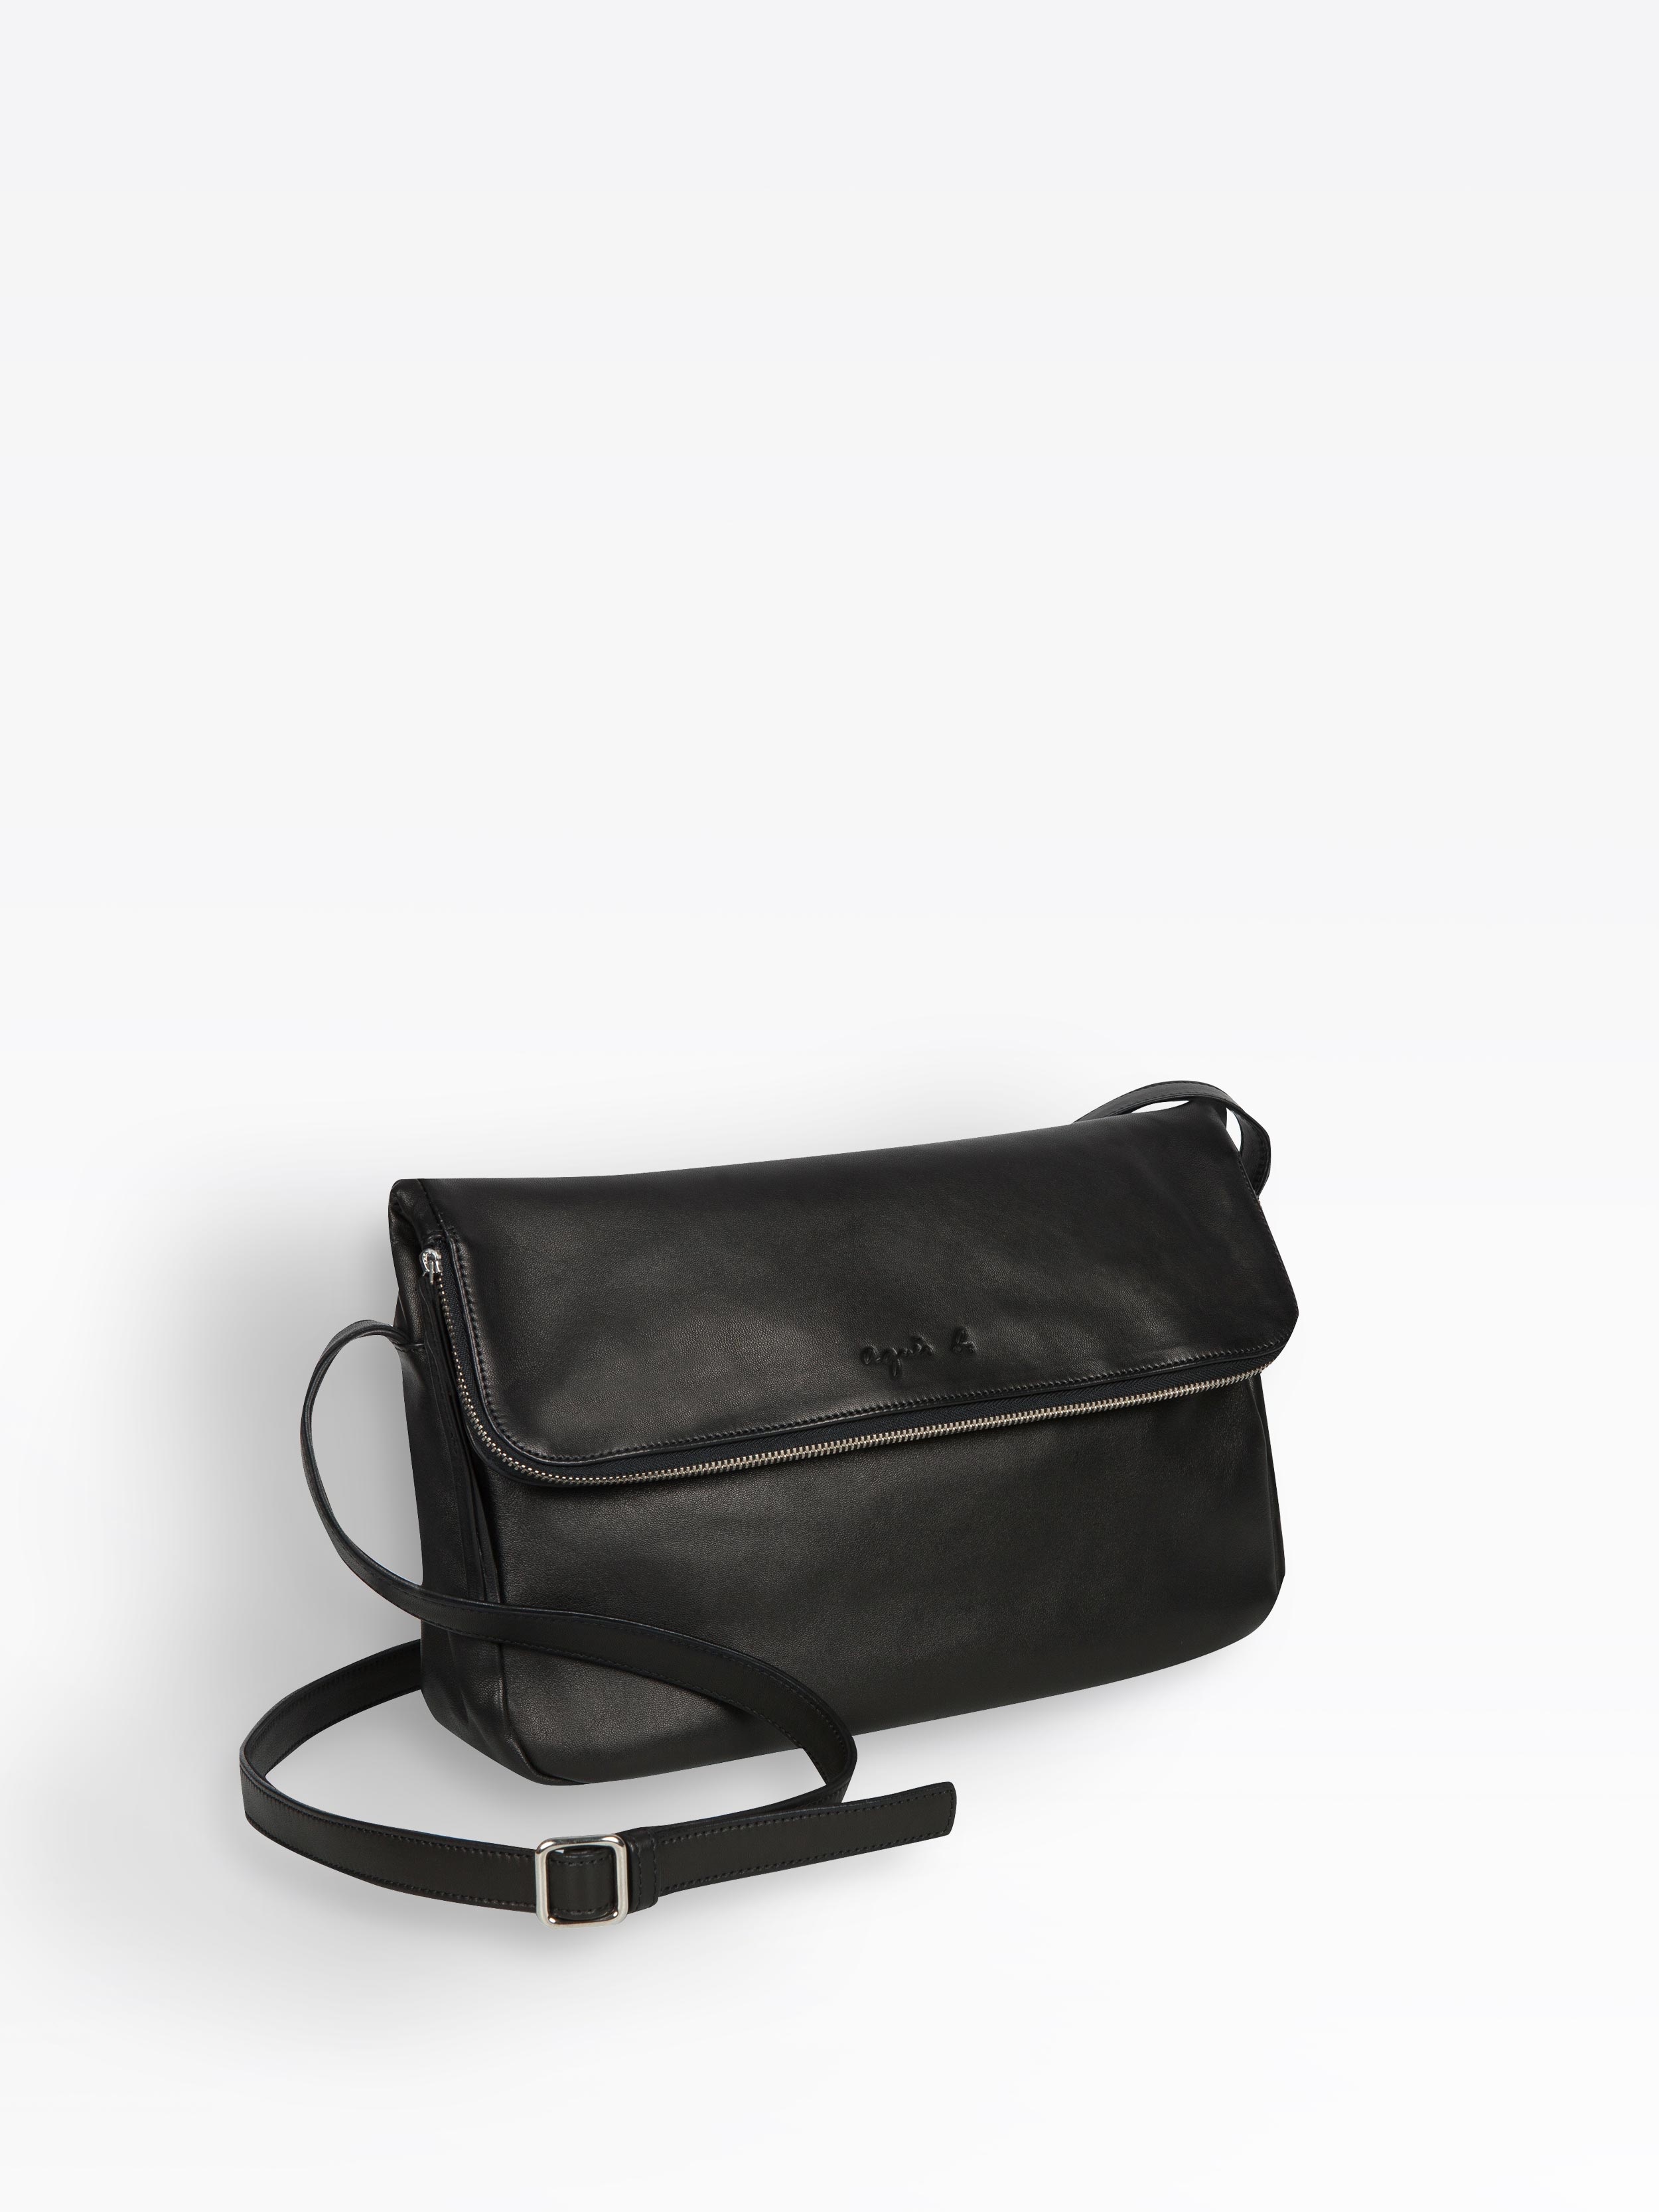 black leather Amelia bag | agnès b.